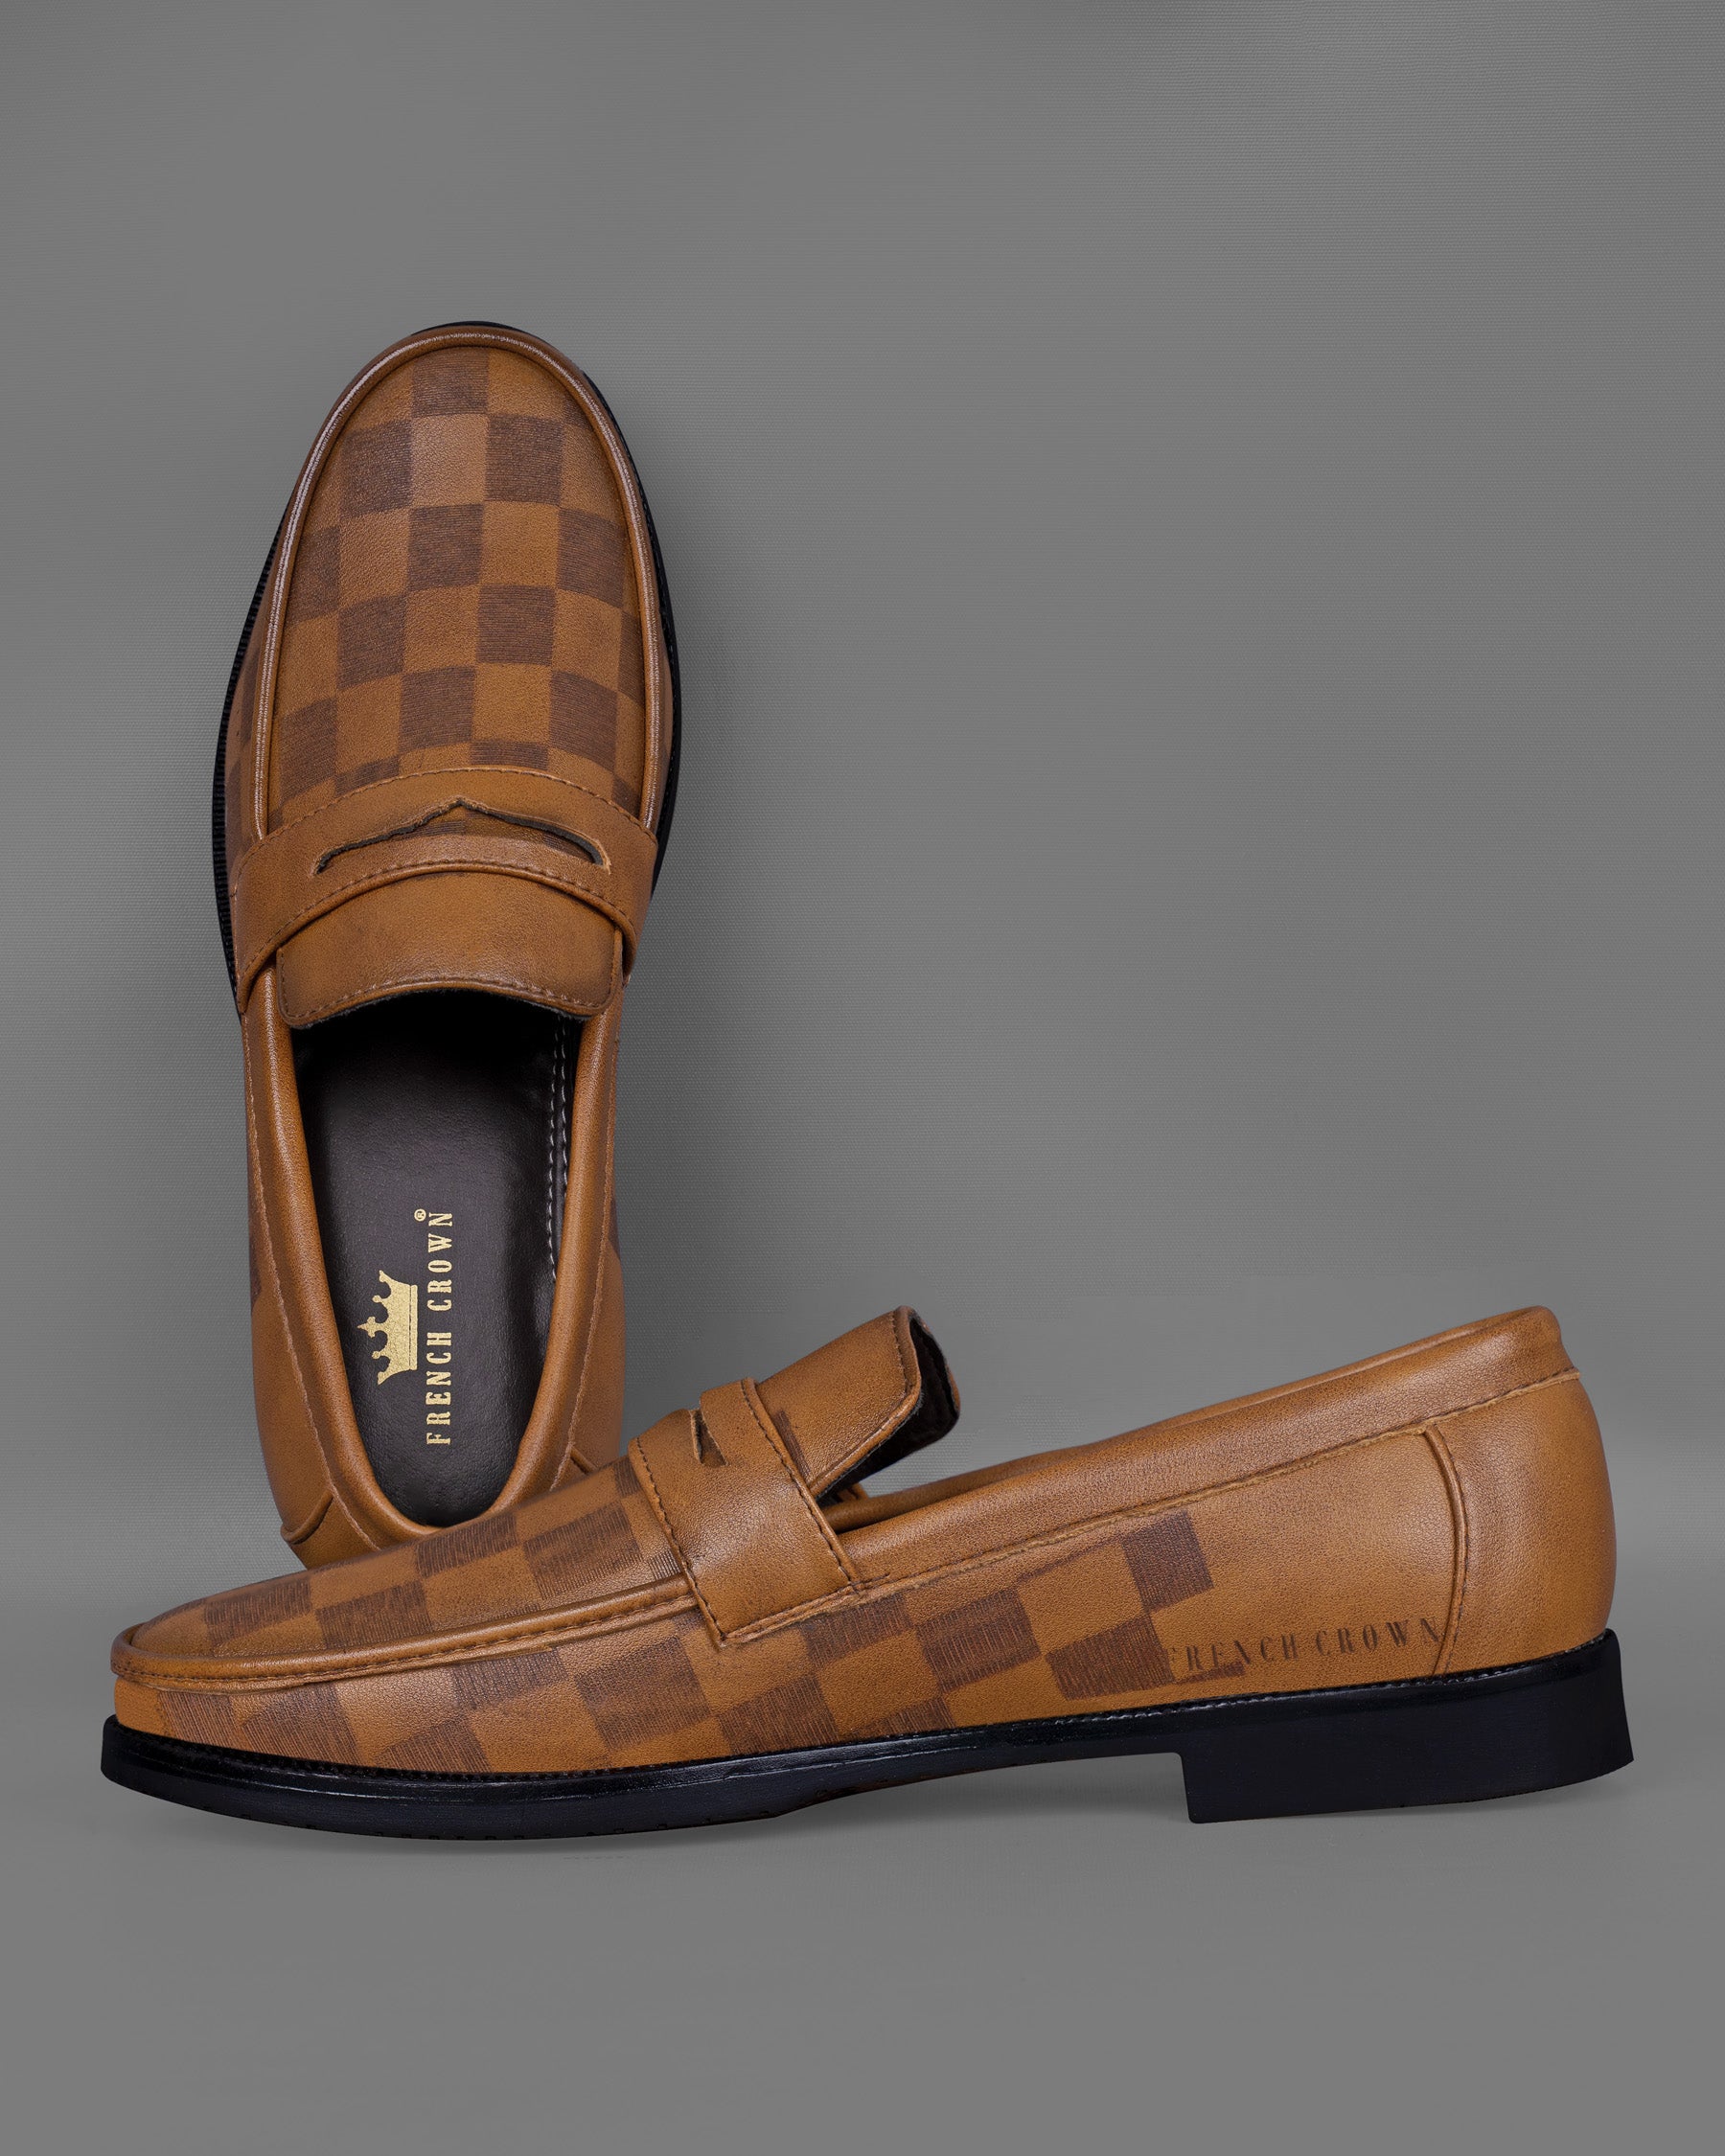 Tan subtle Checkered Loafer Shoes FT043-6, FT043-7, FT043-8, FT043-9, FT043-10